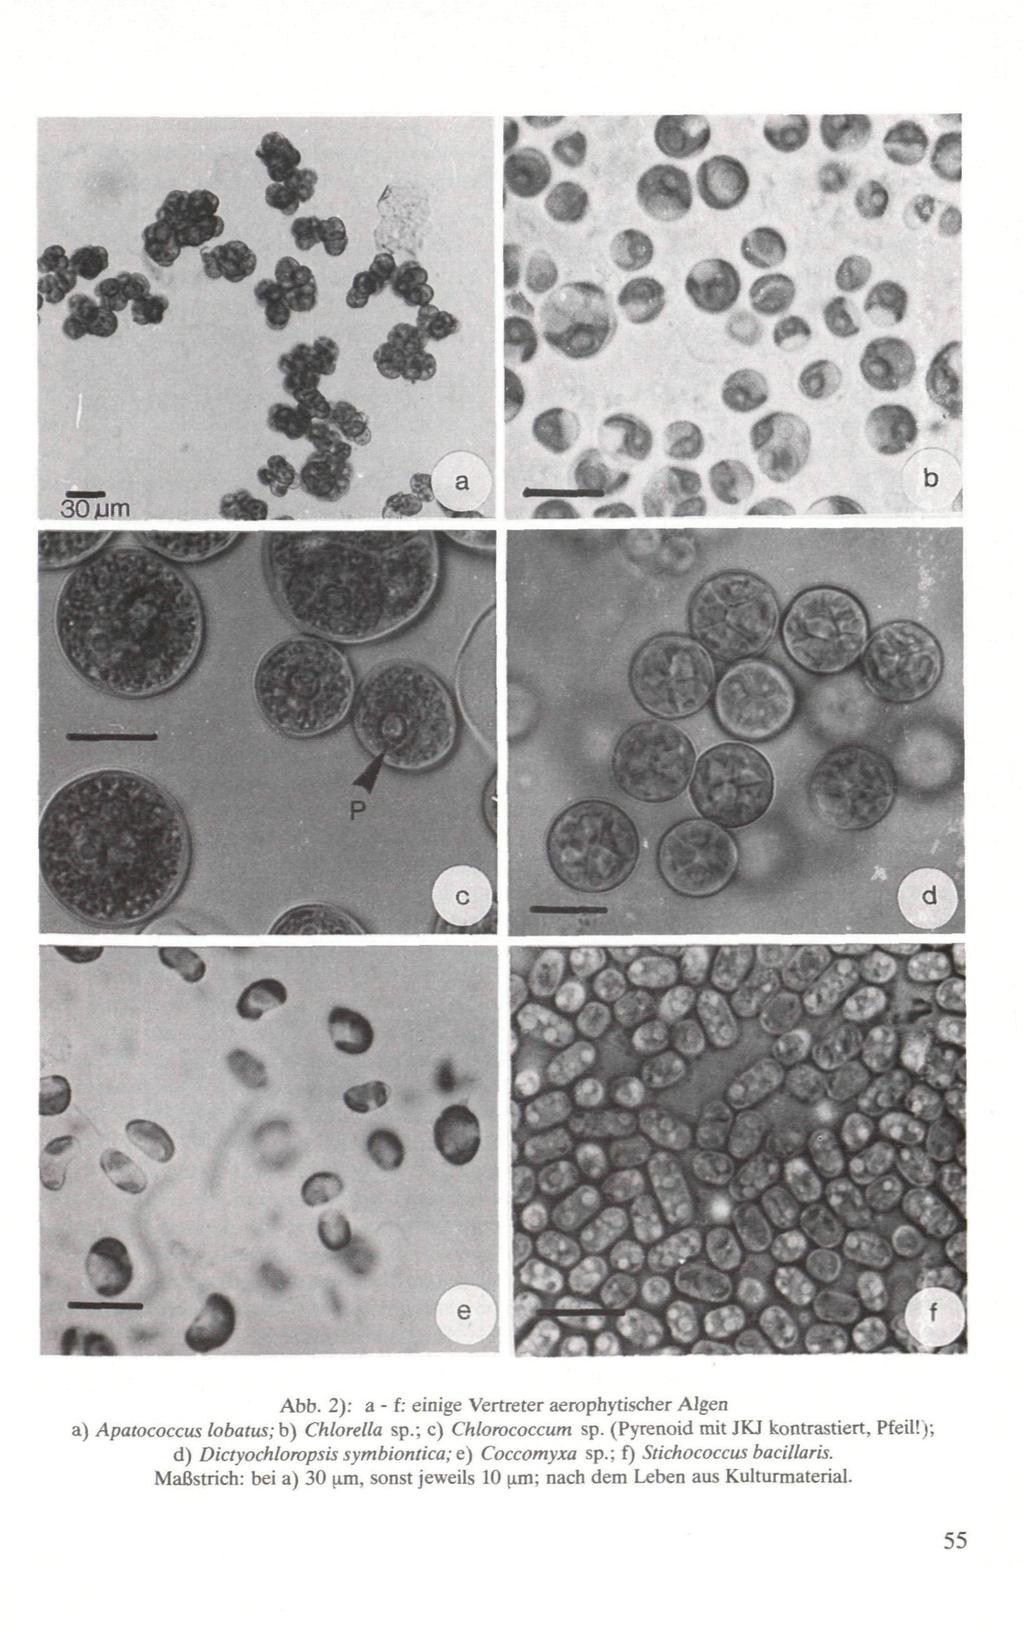 Abb. 2): a - f: einige Vertreter aerophytischer Algen a) Apatococcus lobatus; b) Chlorella sp.; c) Chlorococcum sp. (Pyrenoid mit JKJ kontrastiert, Pfeil!